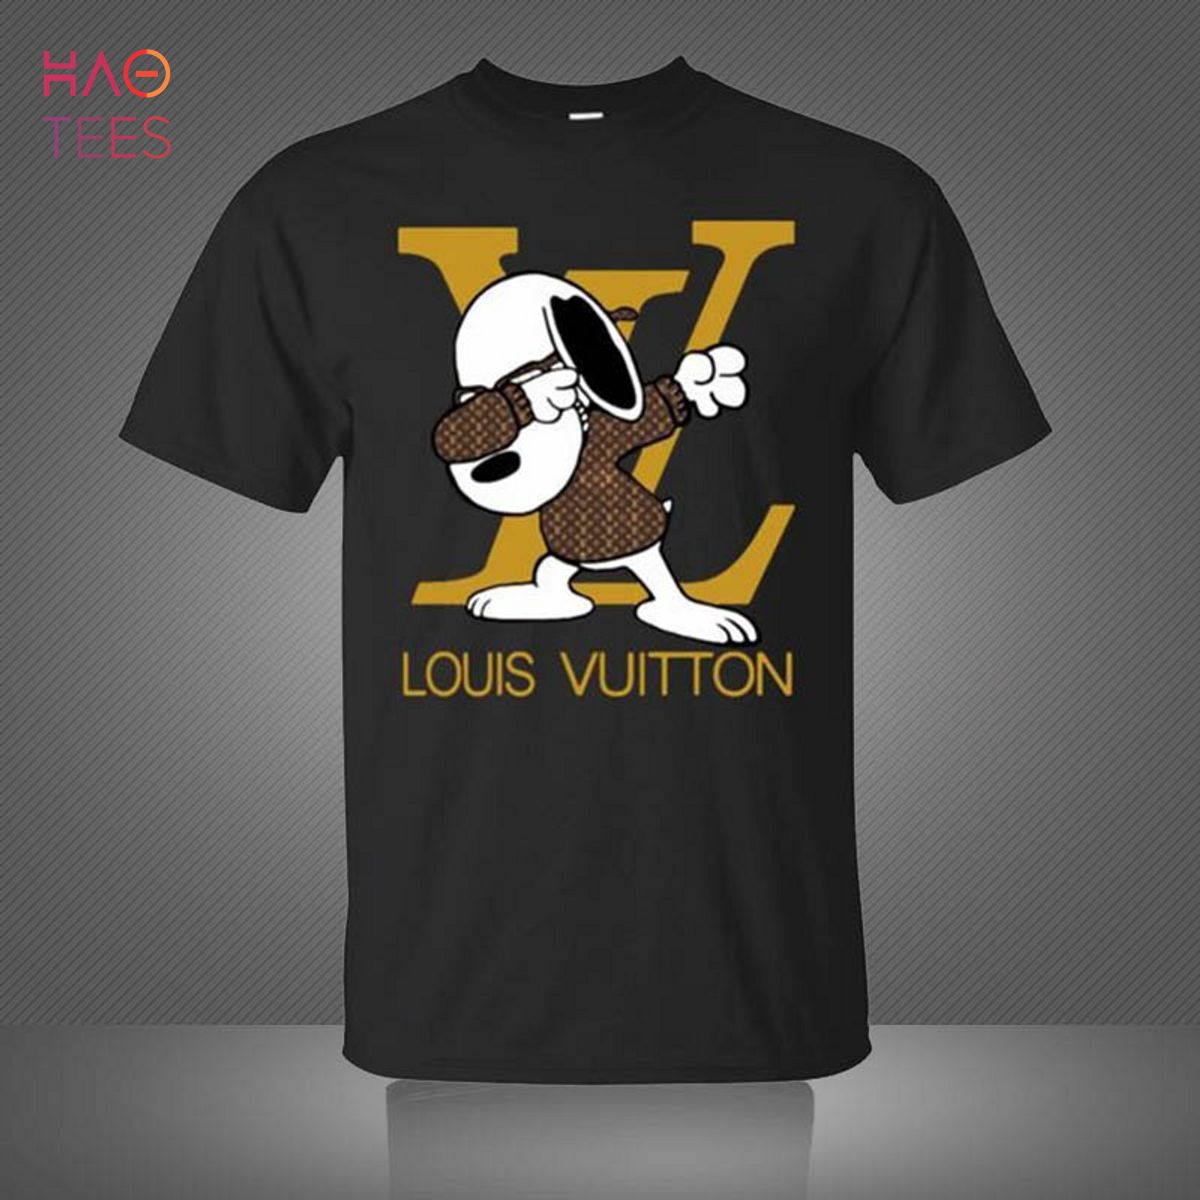 Louis Vuitton Black 3D T-Shirt Limited Edition